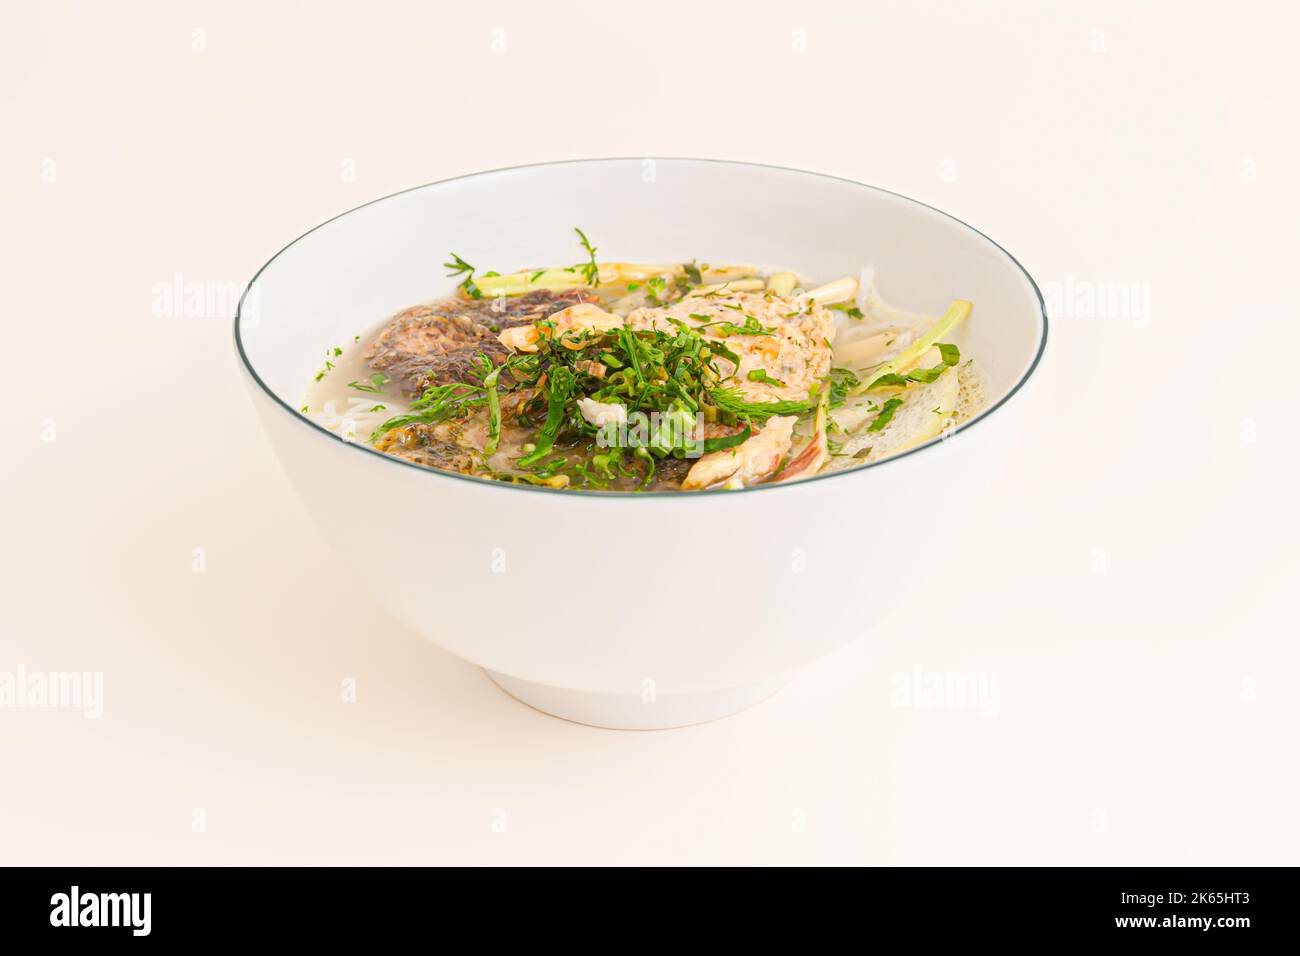 Bun Ca ro dong, vietnamesische Reisnudeln und anabas-Fischsuppe, vietnamesisches Essen isoliert auf weißem Hintergrund, perspektivische Ansicht Stockfoto